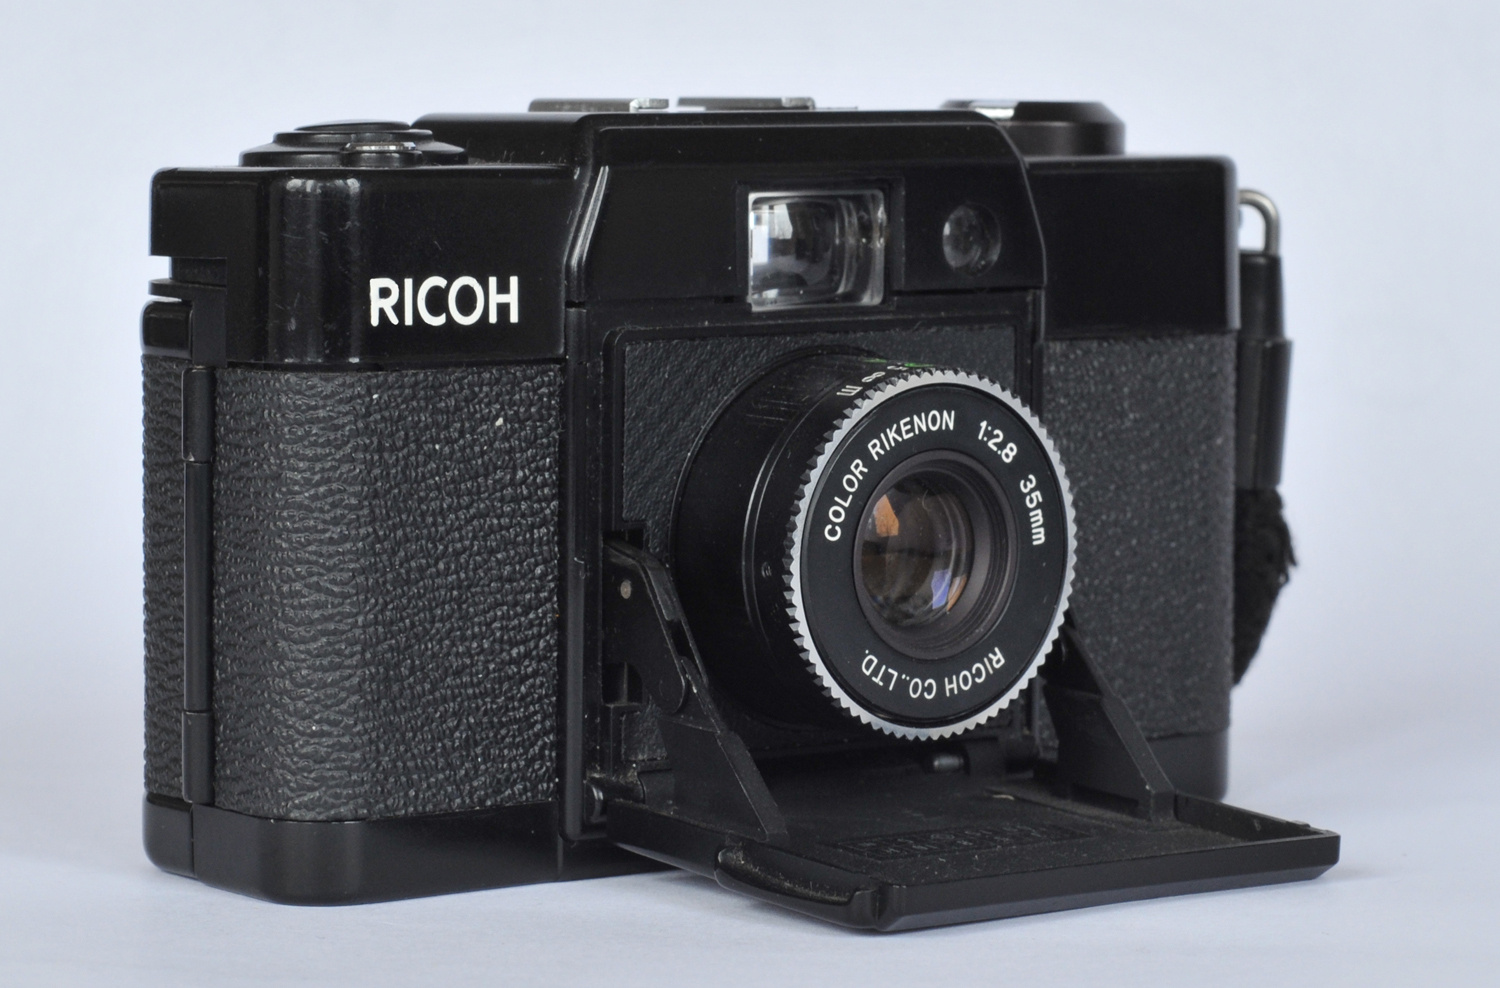 Ricoh FF-1